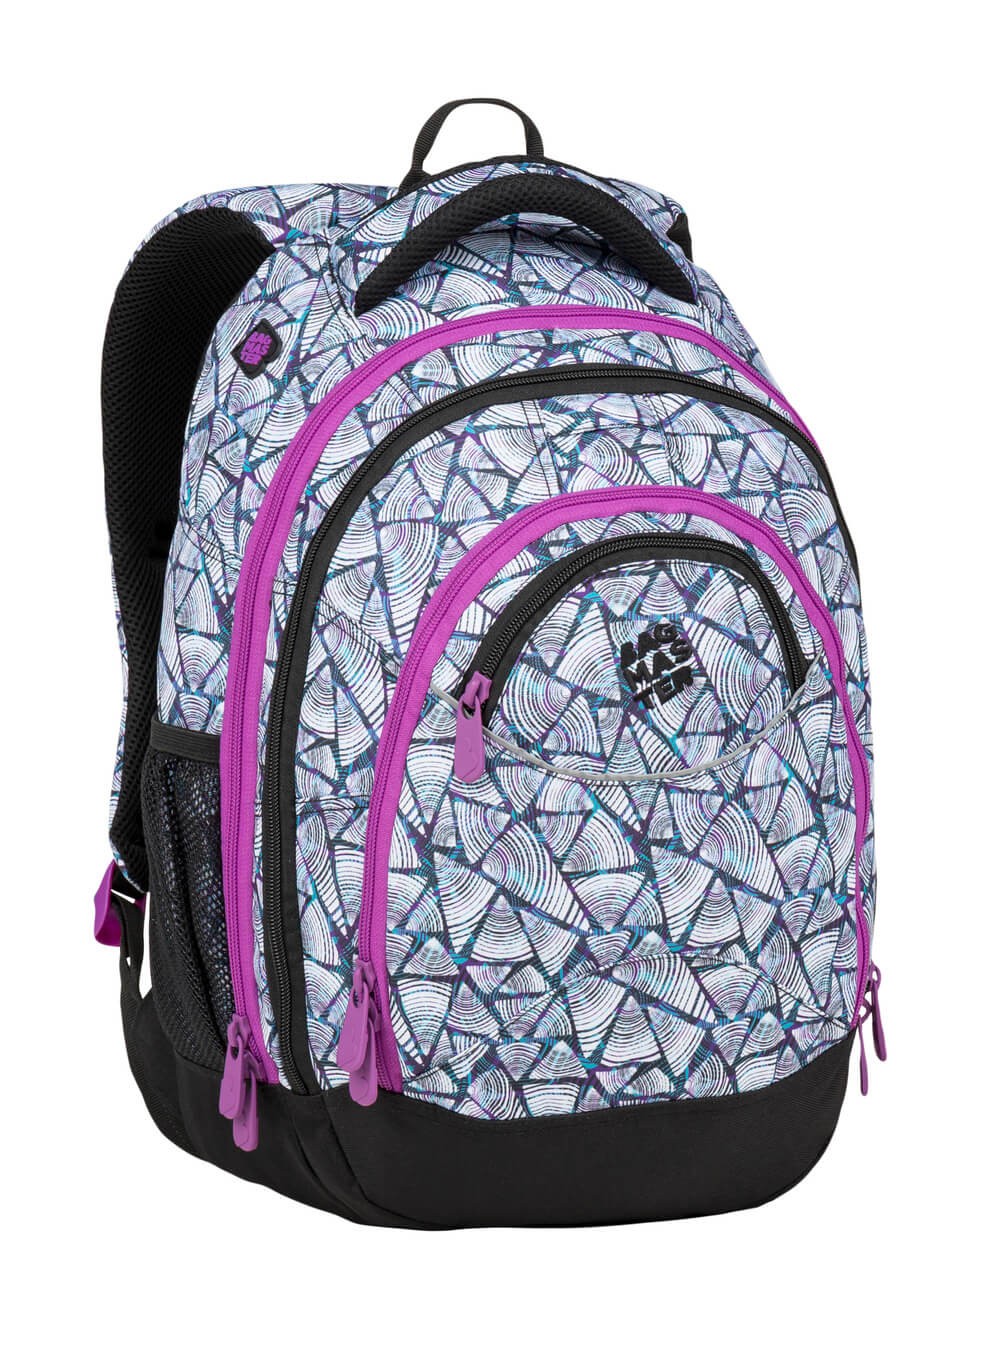 Studentský batoh ENERGY 9 B - fialovo bílý